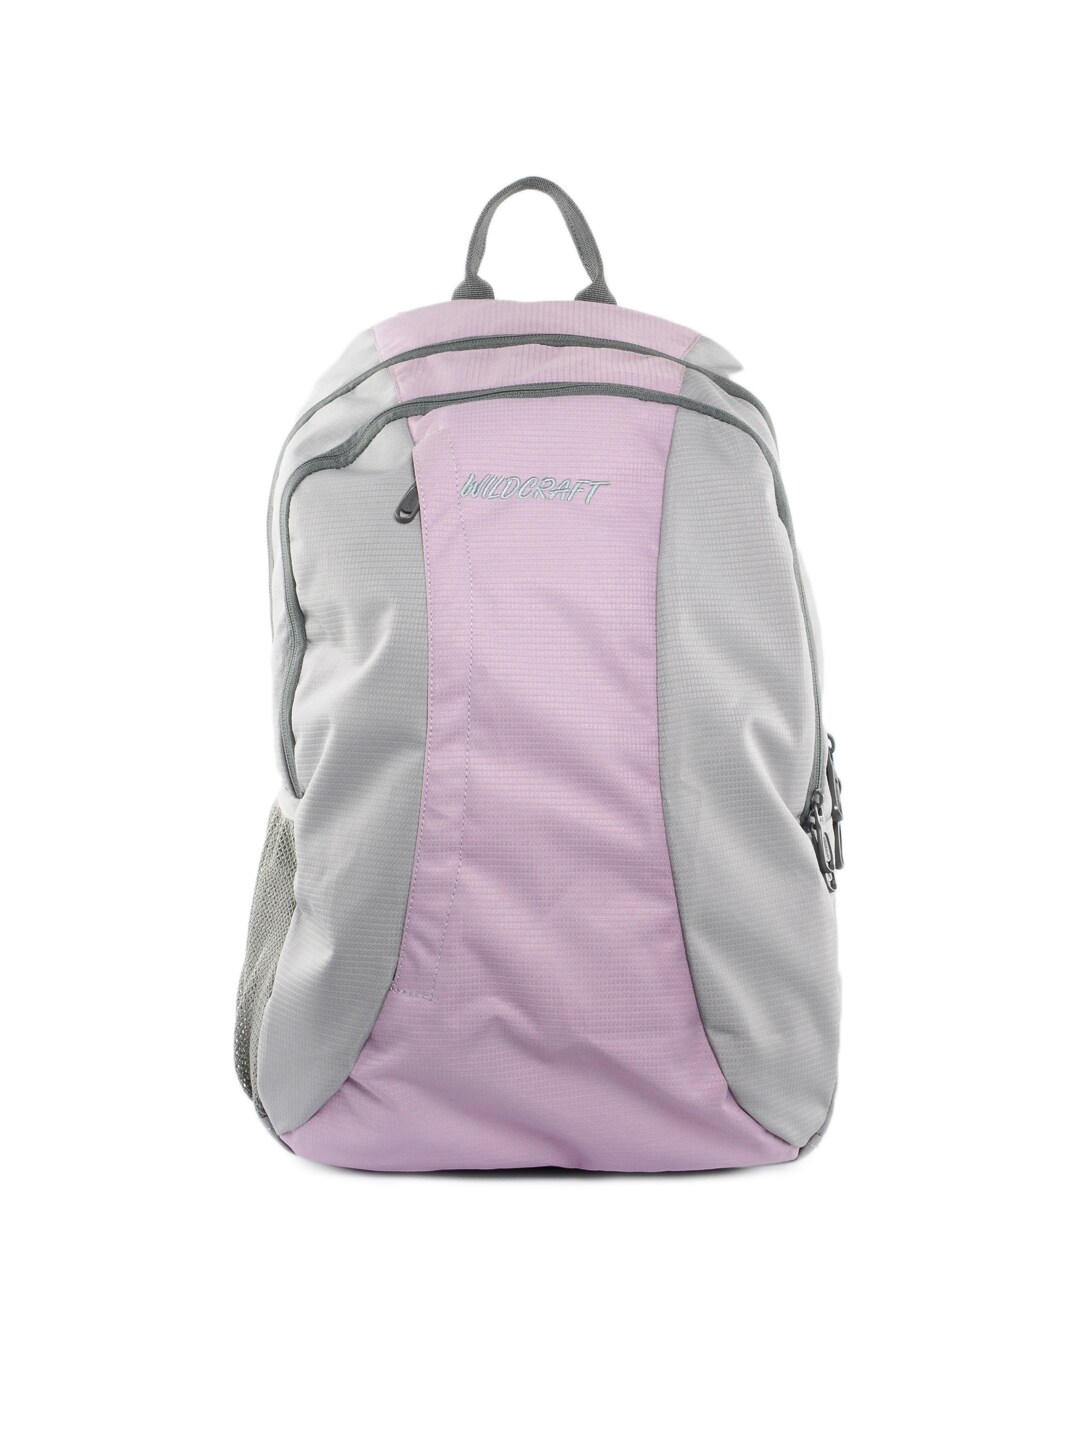 Wildcraft Unisex Grey & Pink Backpack